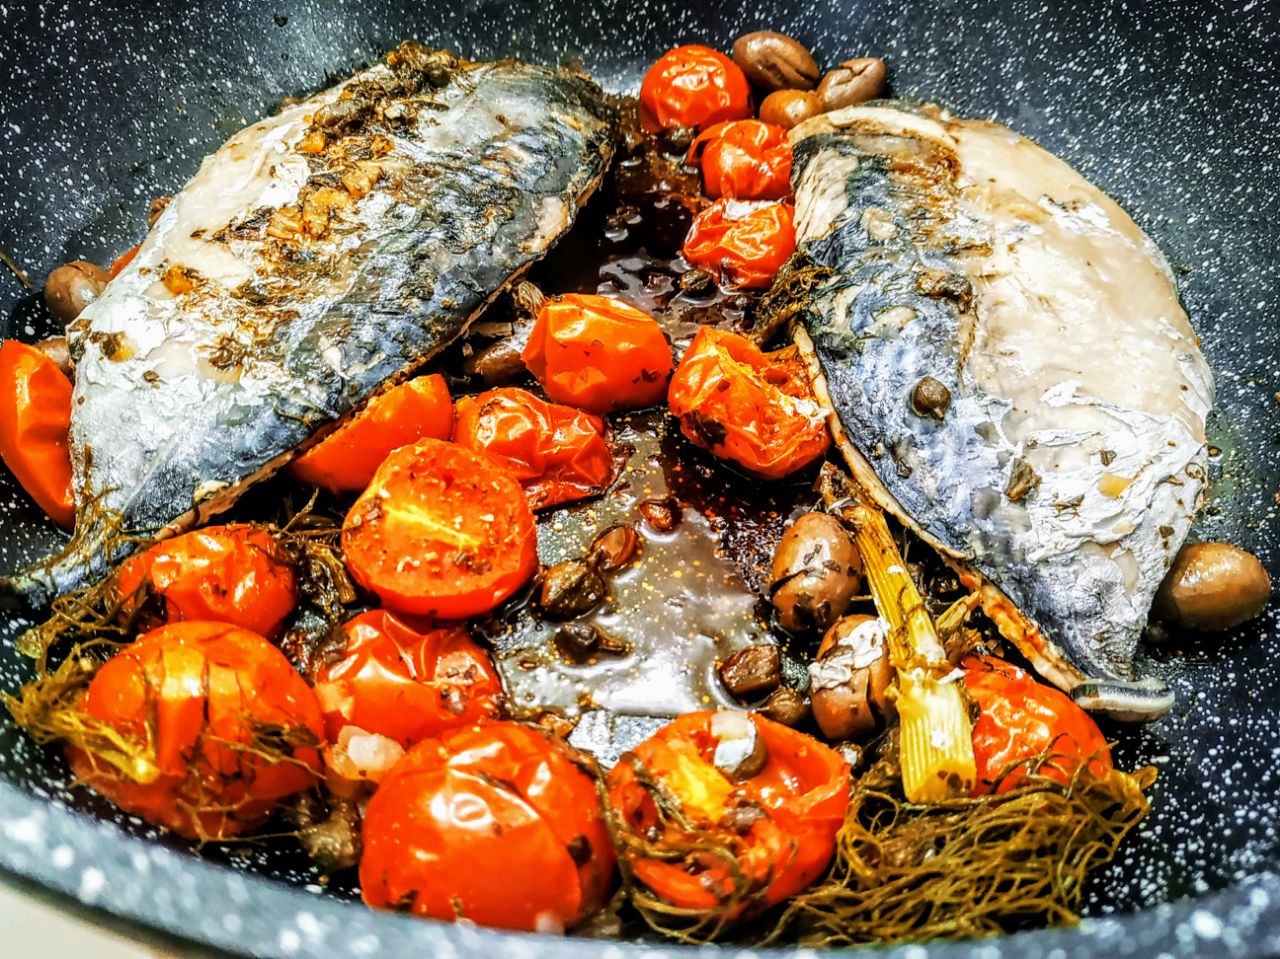 Secondi piatti a base di pesce: tombarello in padella con pomodorini olive capperi e finocchietto!